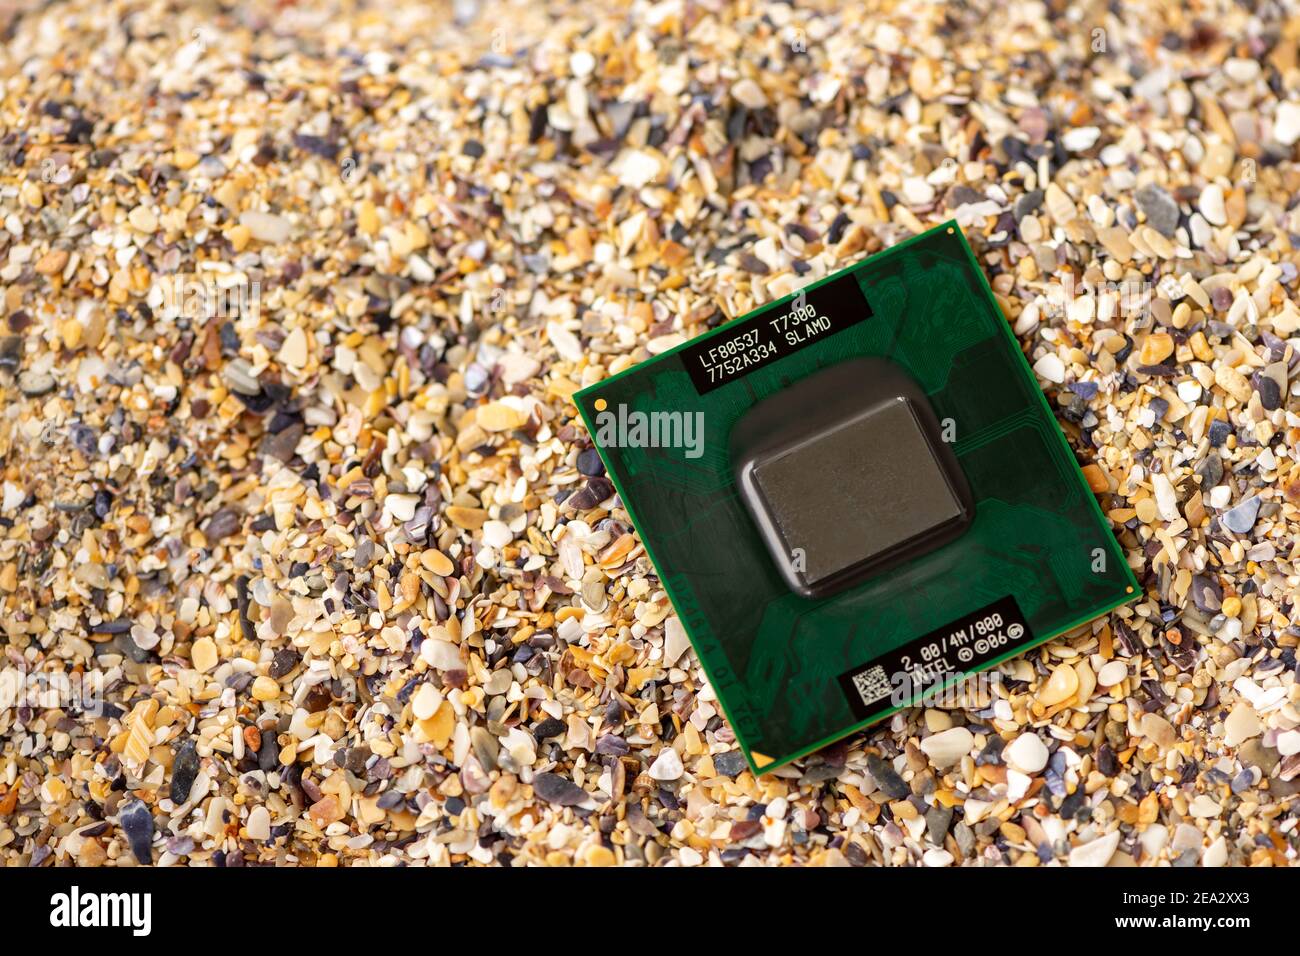 Intel core immagini e fotografie stock ad alta risoluzione - Alamy